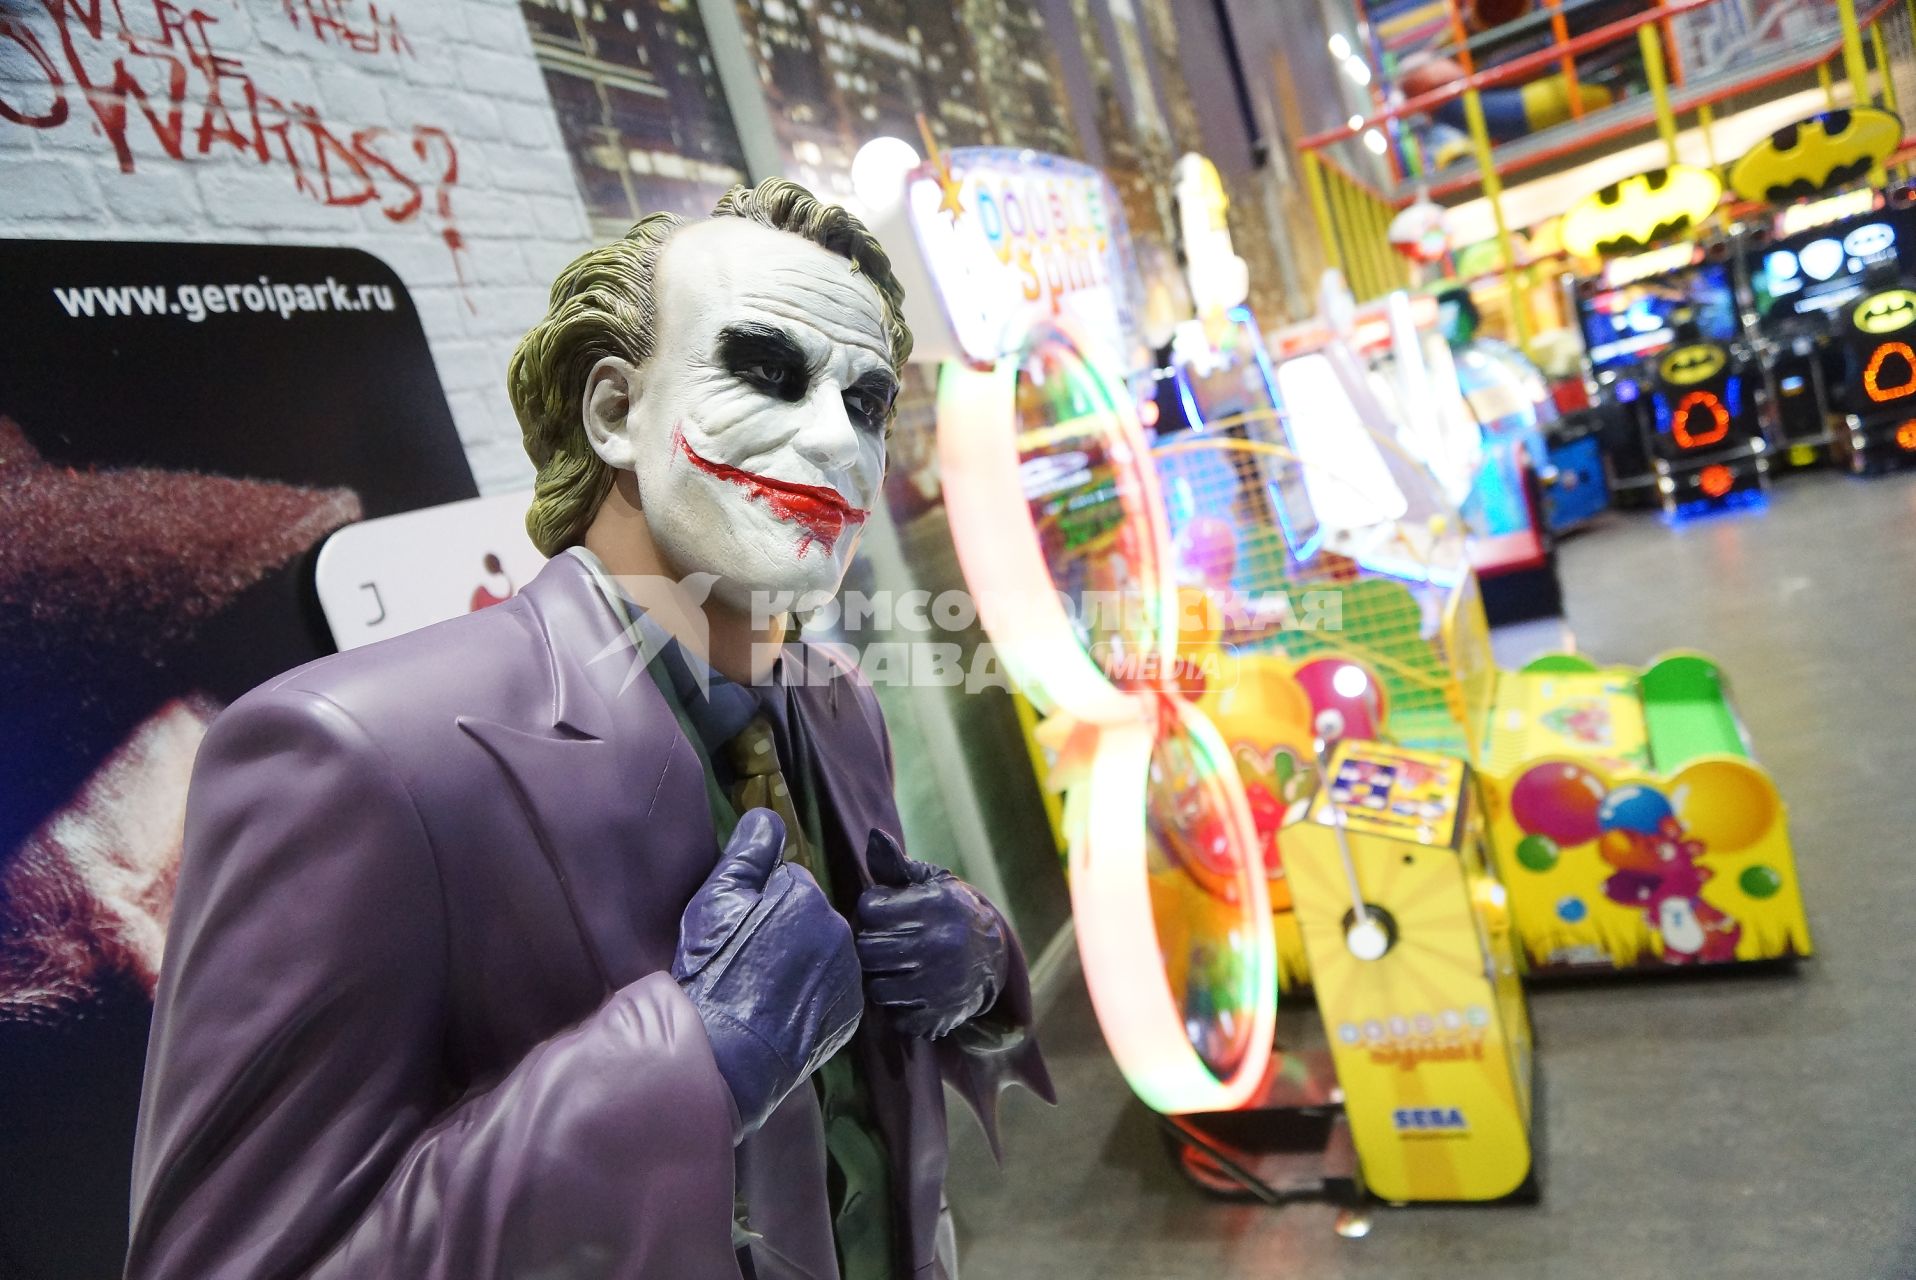 ростовая фигура Джокера в геройпарке ТЦ Гринвич в Екатеринбурге